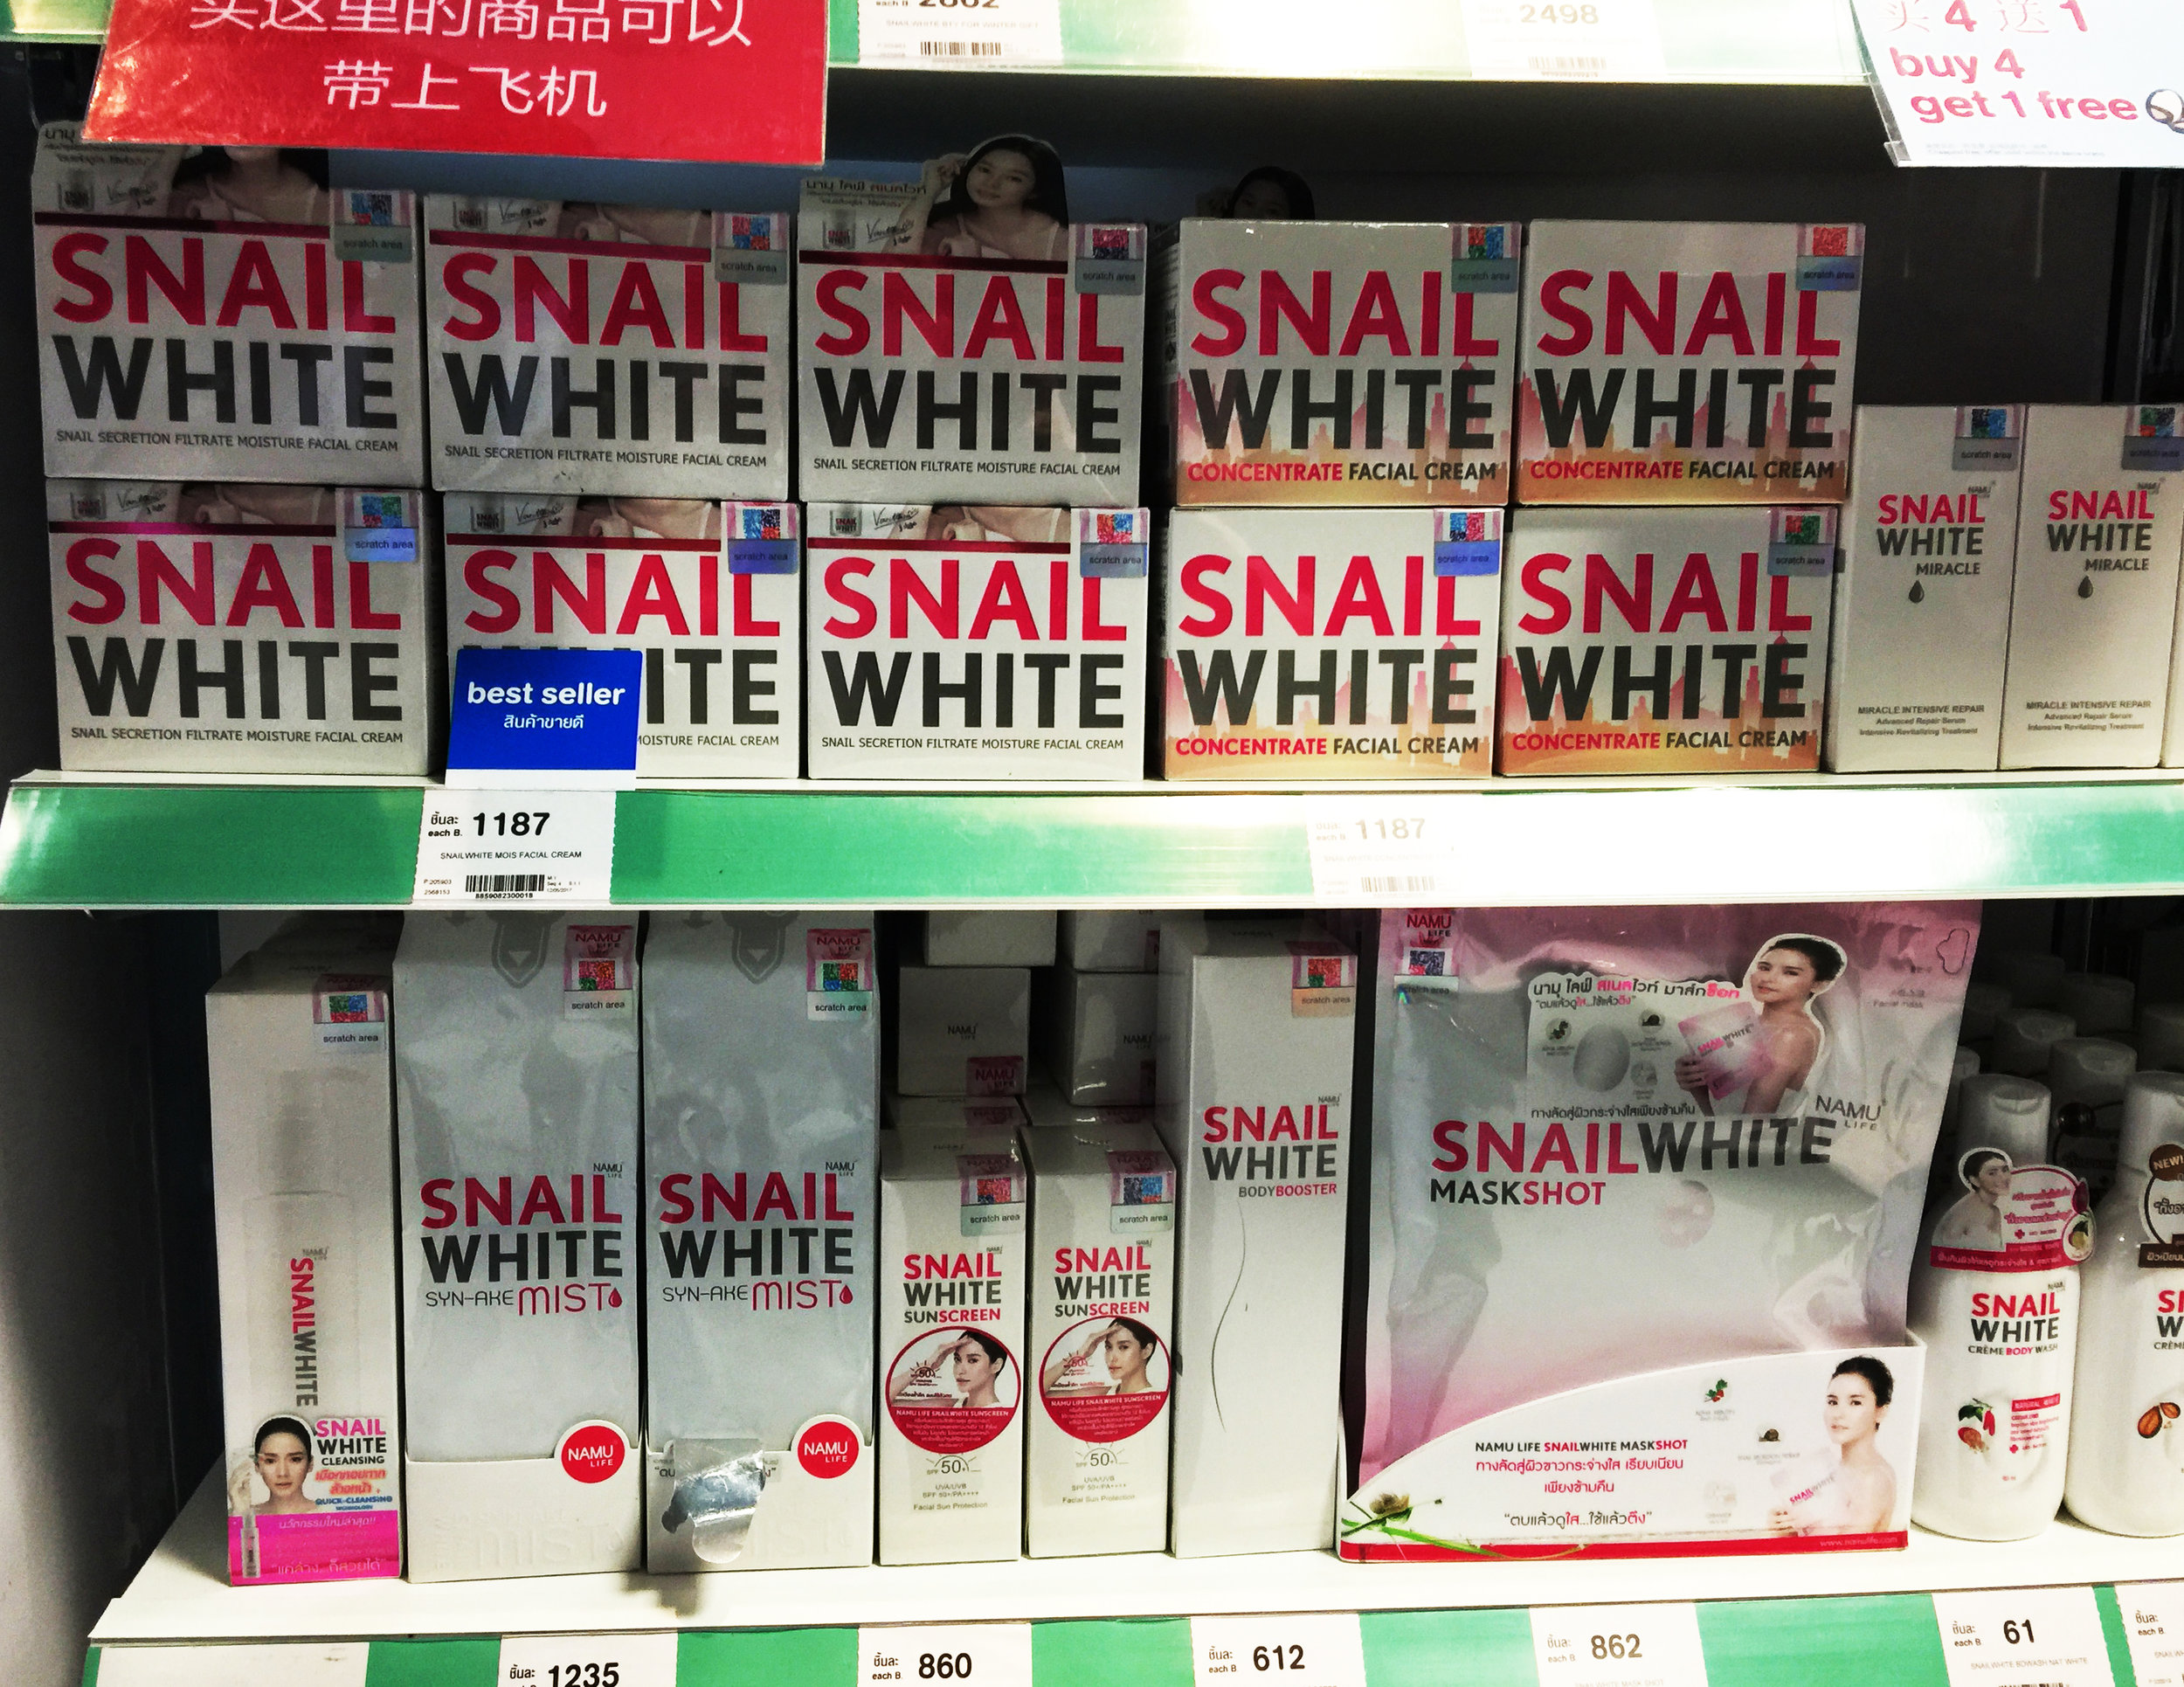 snail-white.jpg